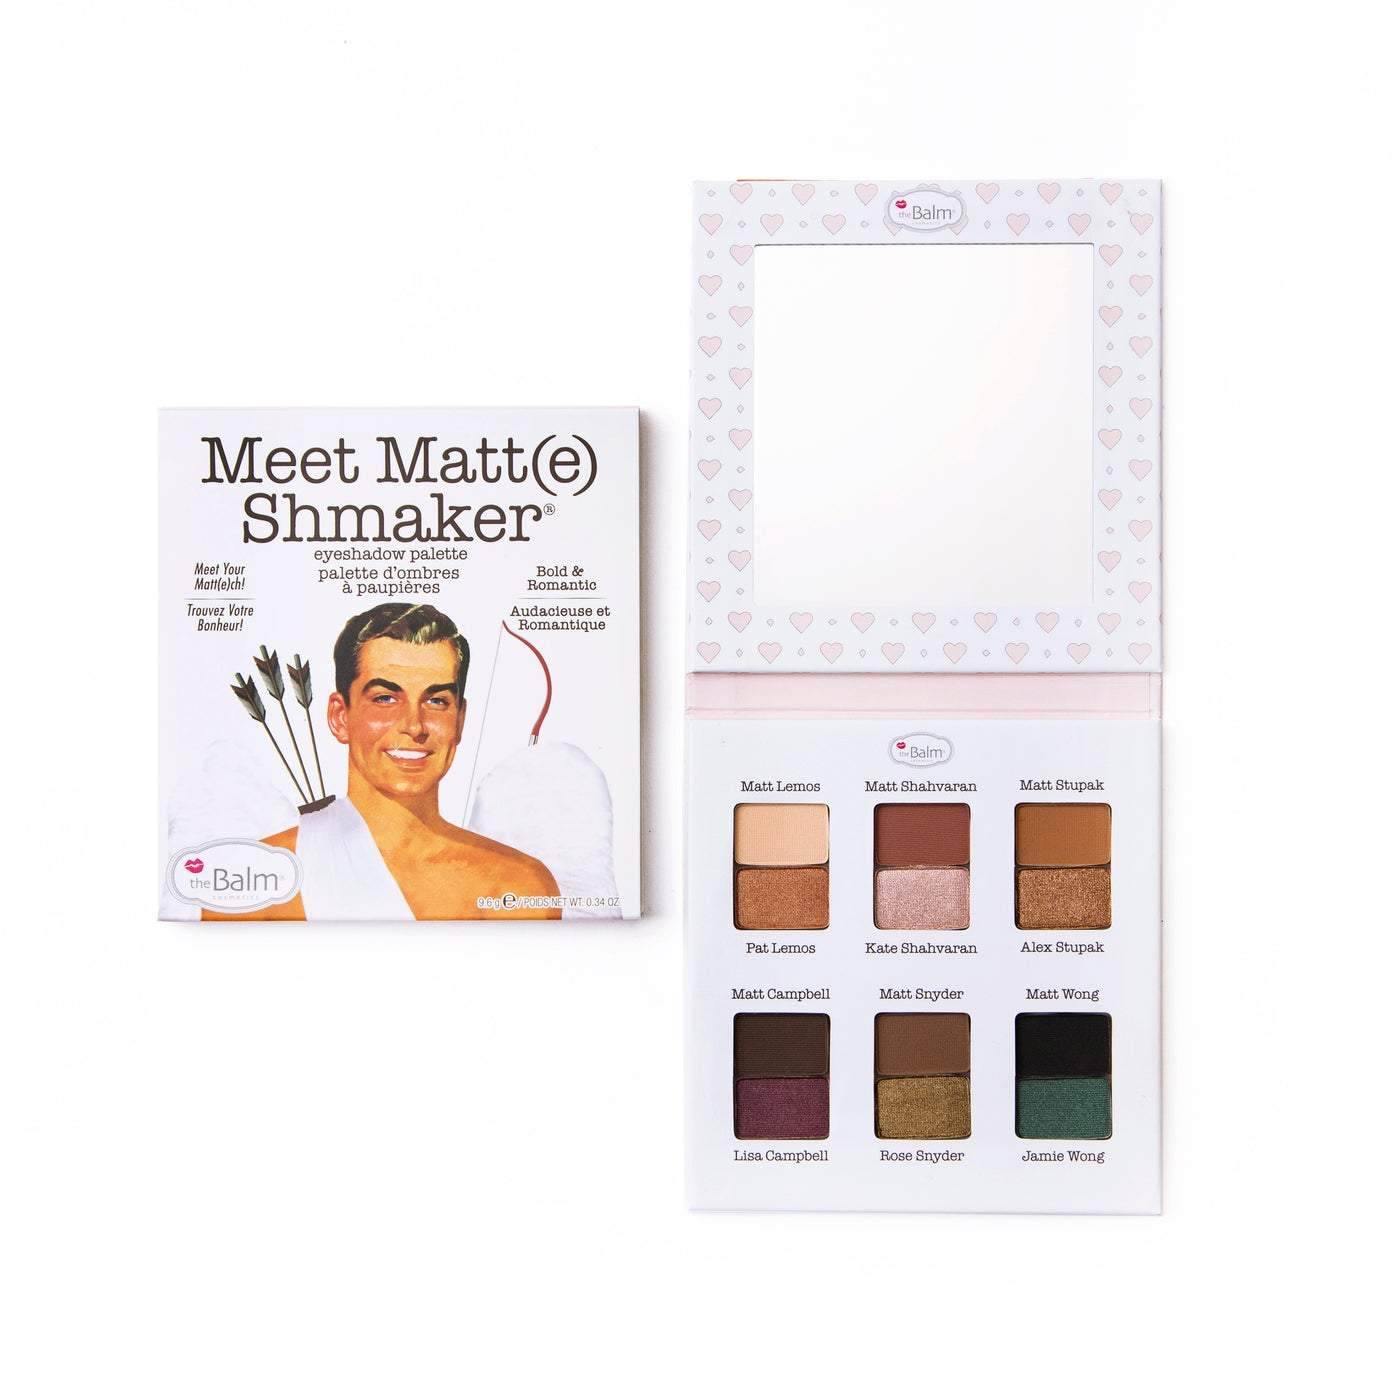 theBalm Meet Matt(e) Shmaker Eyeshadow Palette-theBalm-Brand_theBalm,Collection_Makeup,Makeup_Eye,Makeup_Eyeshadow,theBalm_Eyes,theBalm_Palettes